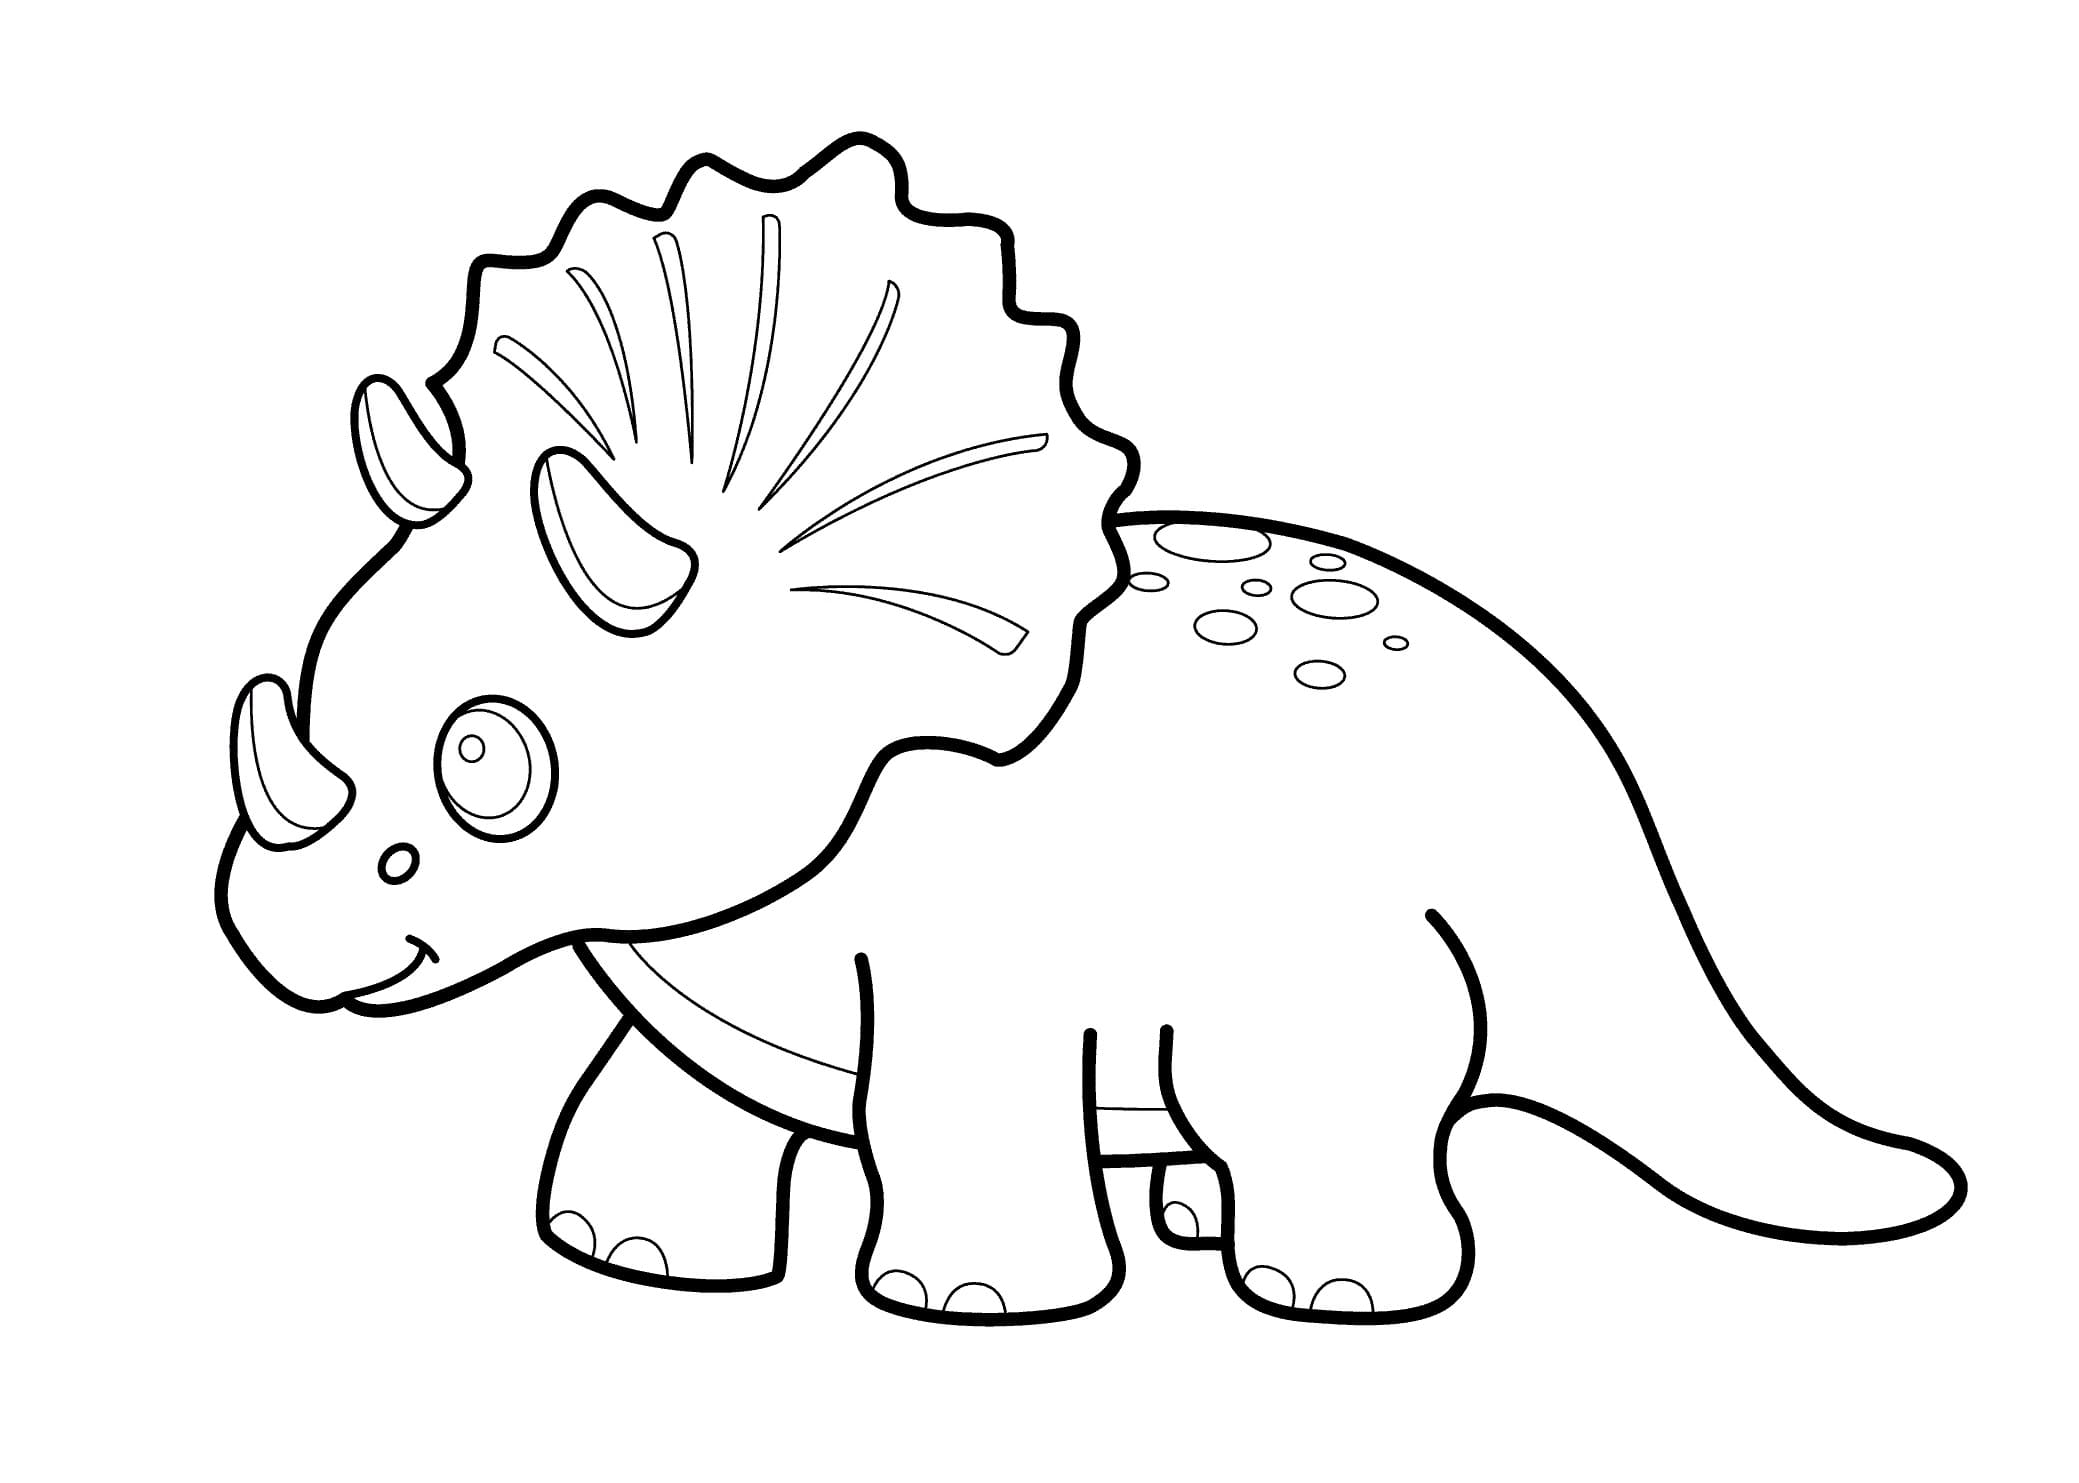 Ausmalbilder Triceratops. Kostenlos herunterladen oder ausdrucken